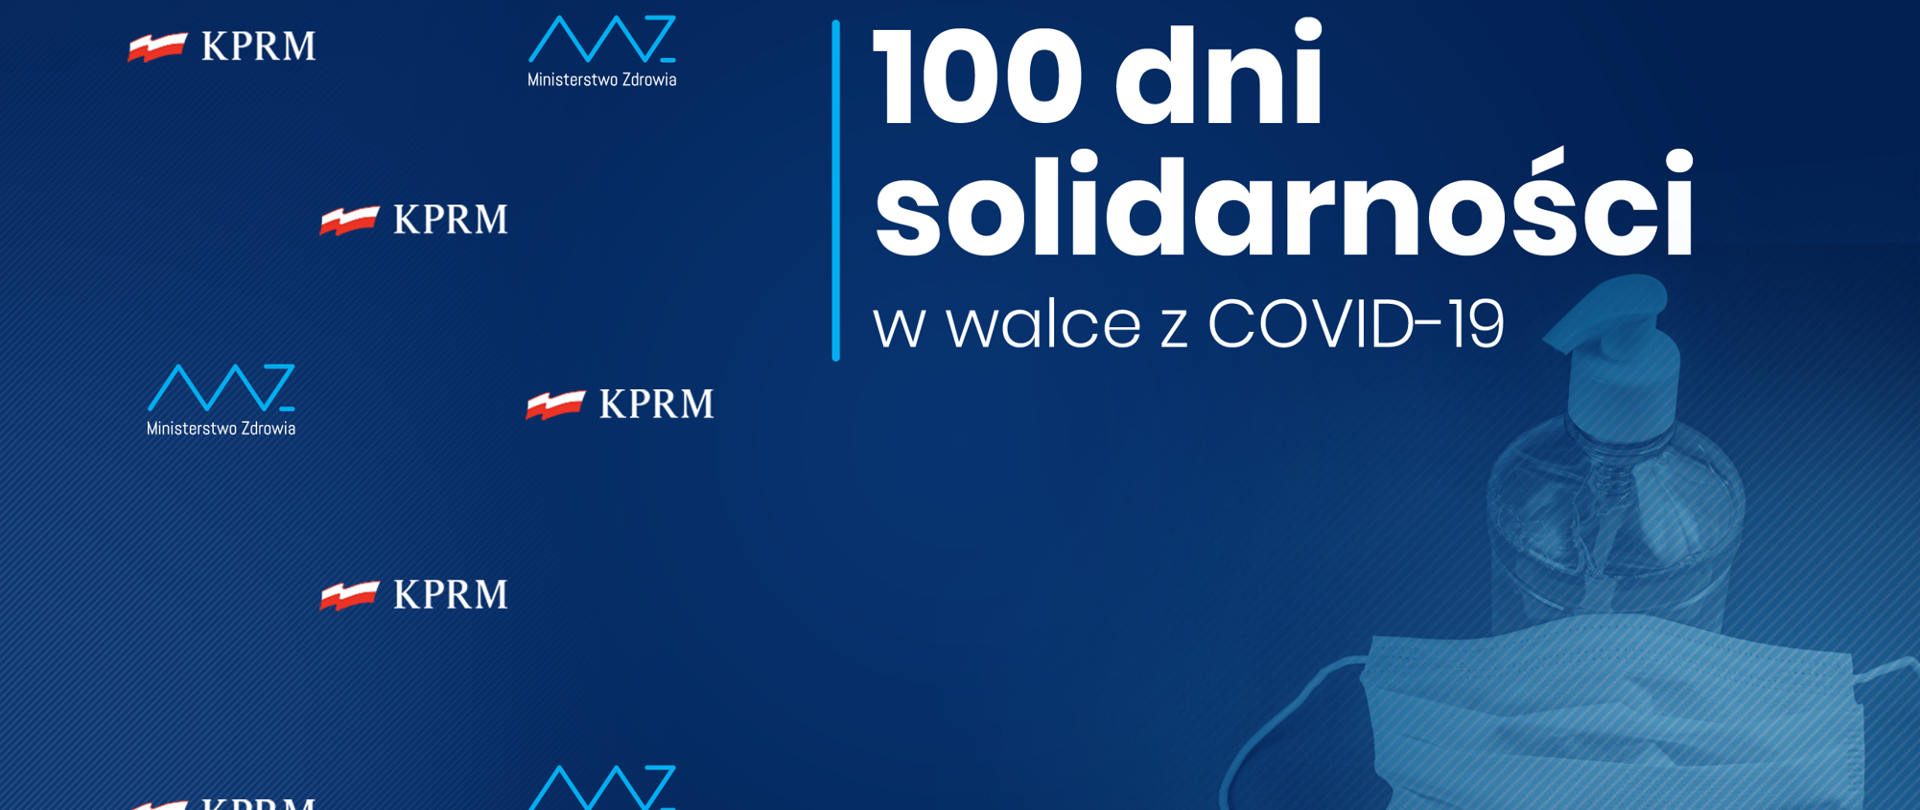 Niebieskie tło z napisem 100 dni solidarności w walce z COVID-19, płynem dezynfekcyjnym i maseczką.